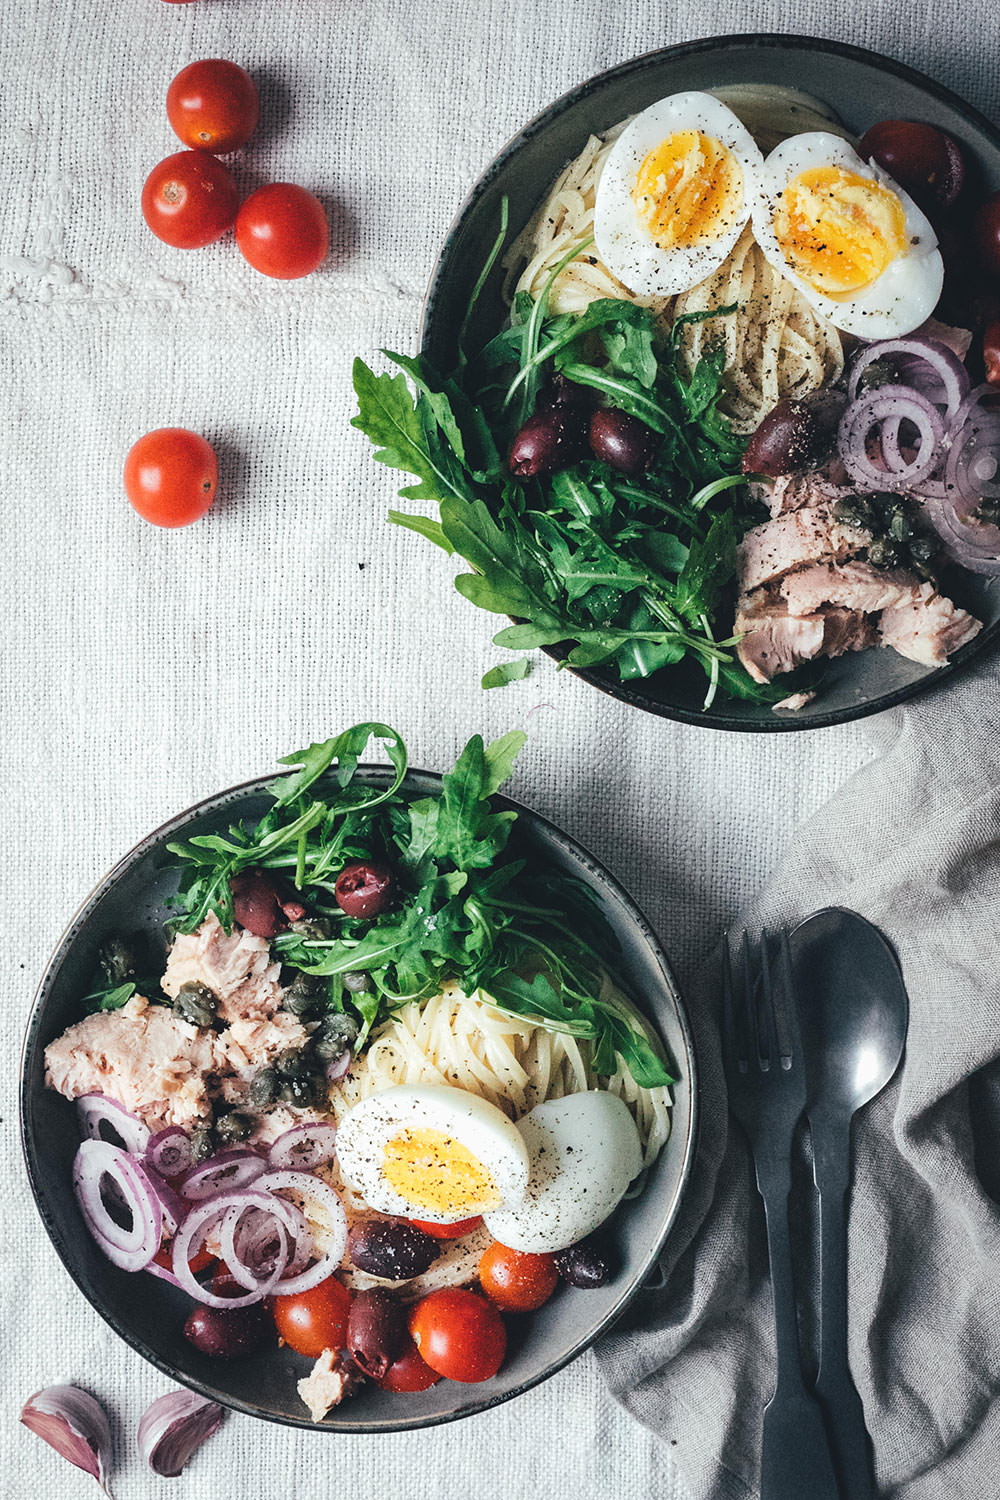 Rezept für Pasta Niçoise – in Anlehnung an den französischen Salat-Klassiker Salade Niçoise | Linguine oder Spaghetti mit Zitronen-Sauce, Rucola, Tomaten, Oliven, Zwiebeln, Kapern und wachsweichem Ei | blitzschnell auf dem Tisch | moeyskitchen.com #pasta #pastanicoise #nicoise #saladenicoise #sommerpasta #nudeln #hauptgericht #foodblog #foodblogger #rezept #kochen #schnelleküche #einfacherezepte